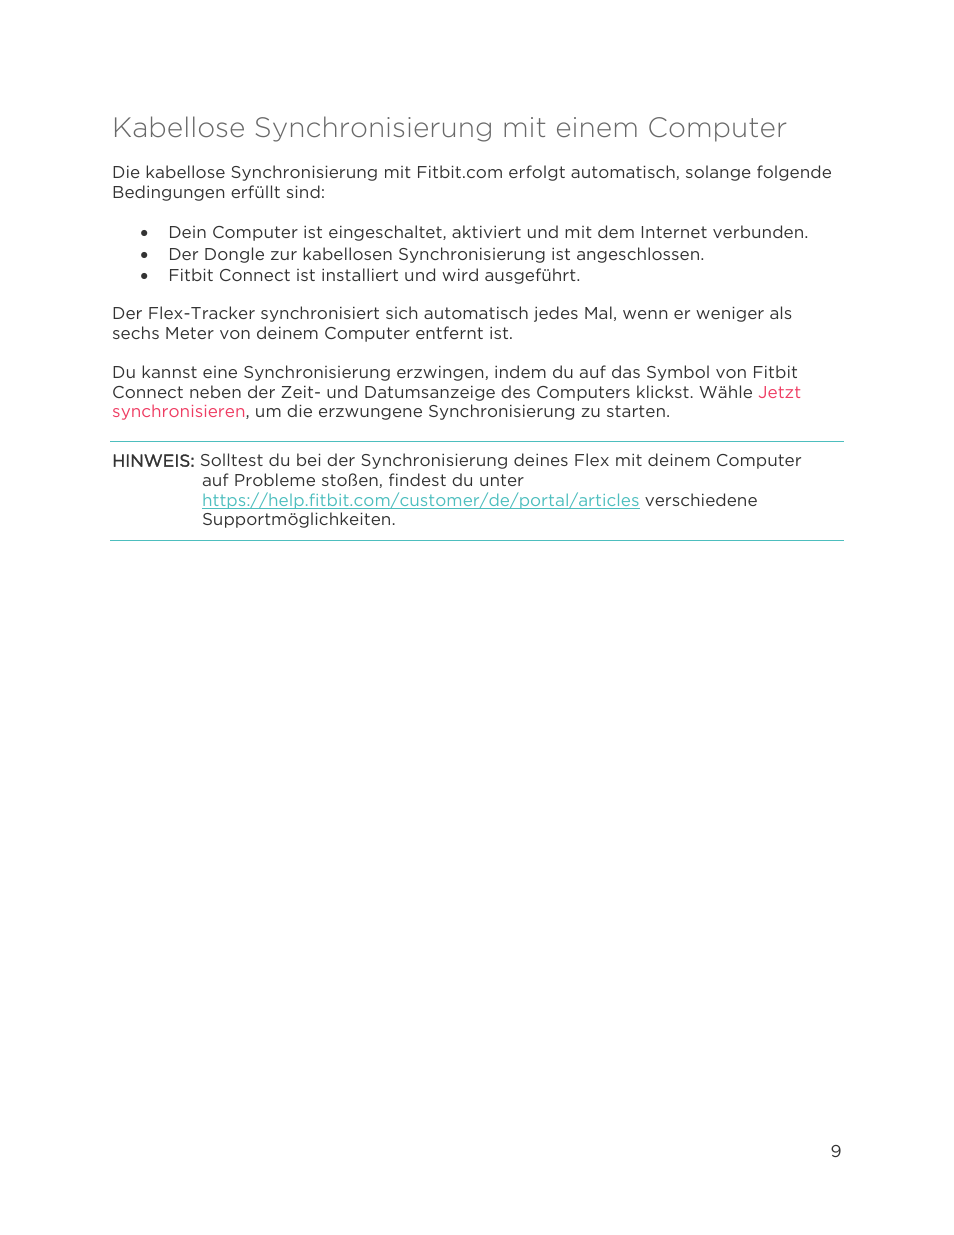 Kabellose synchronisierung mit einem computer | Fitbit Flex Benutzerhandbuch | Seite 14 / 41